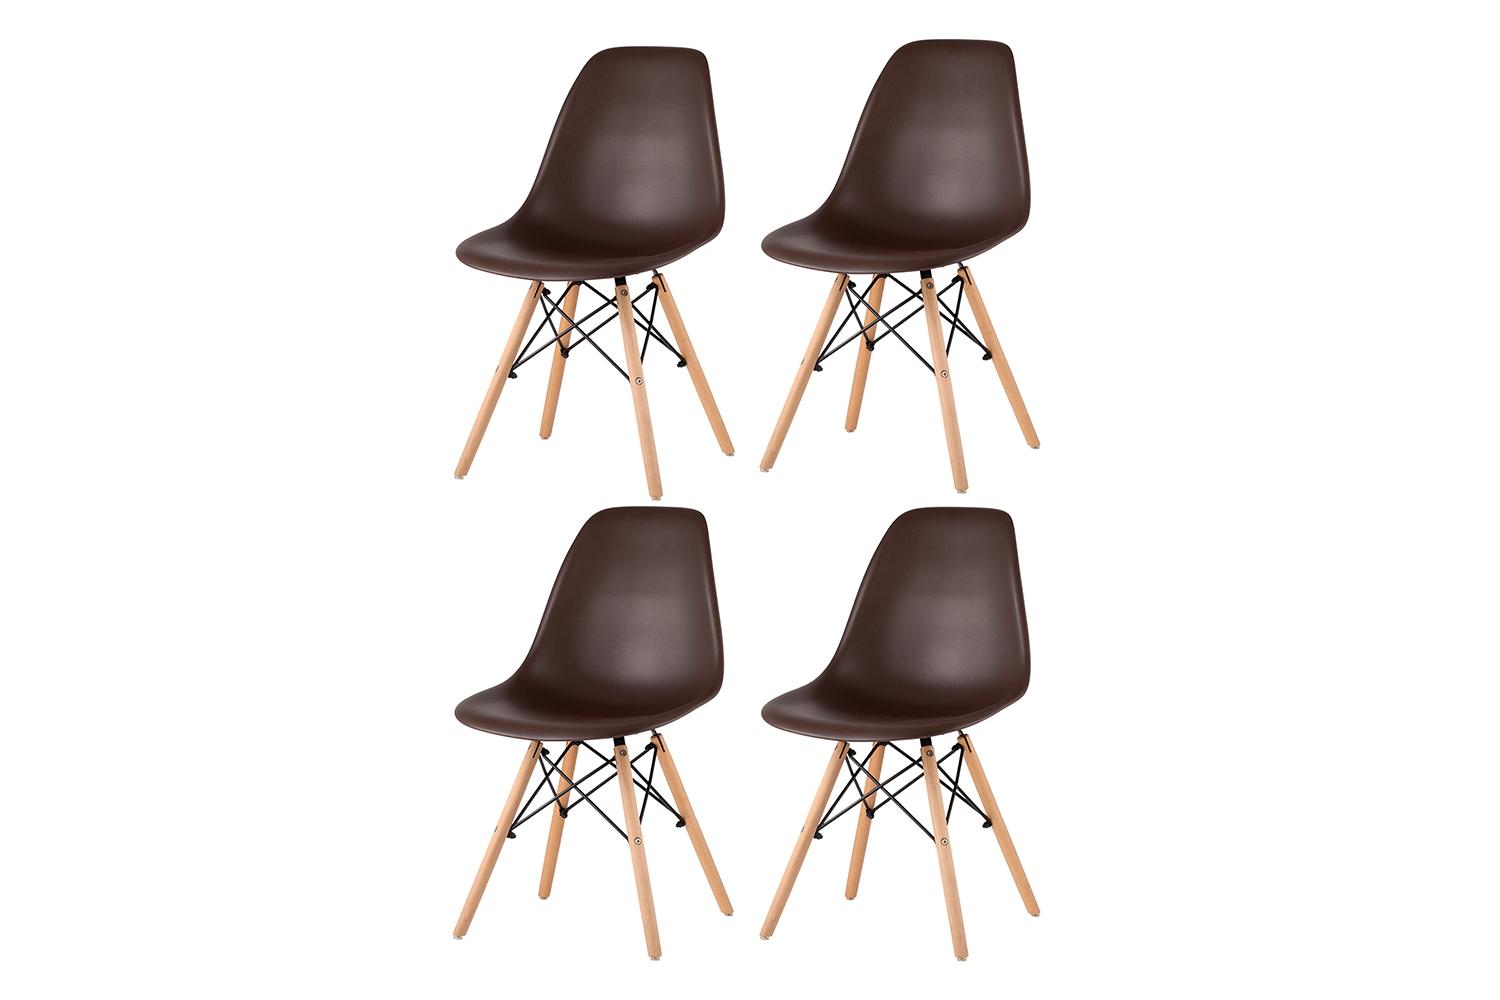 Набор стульев Eames